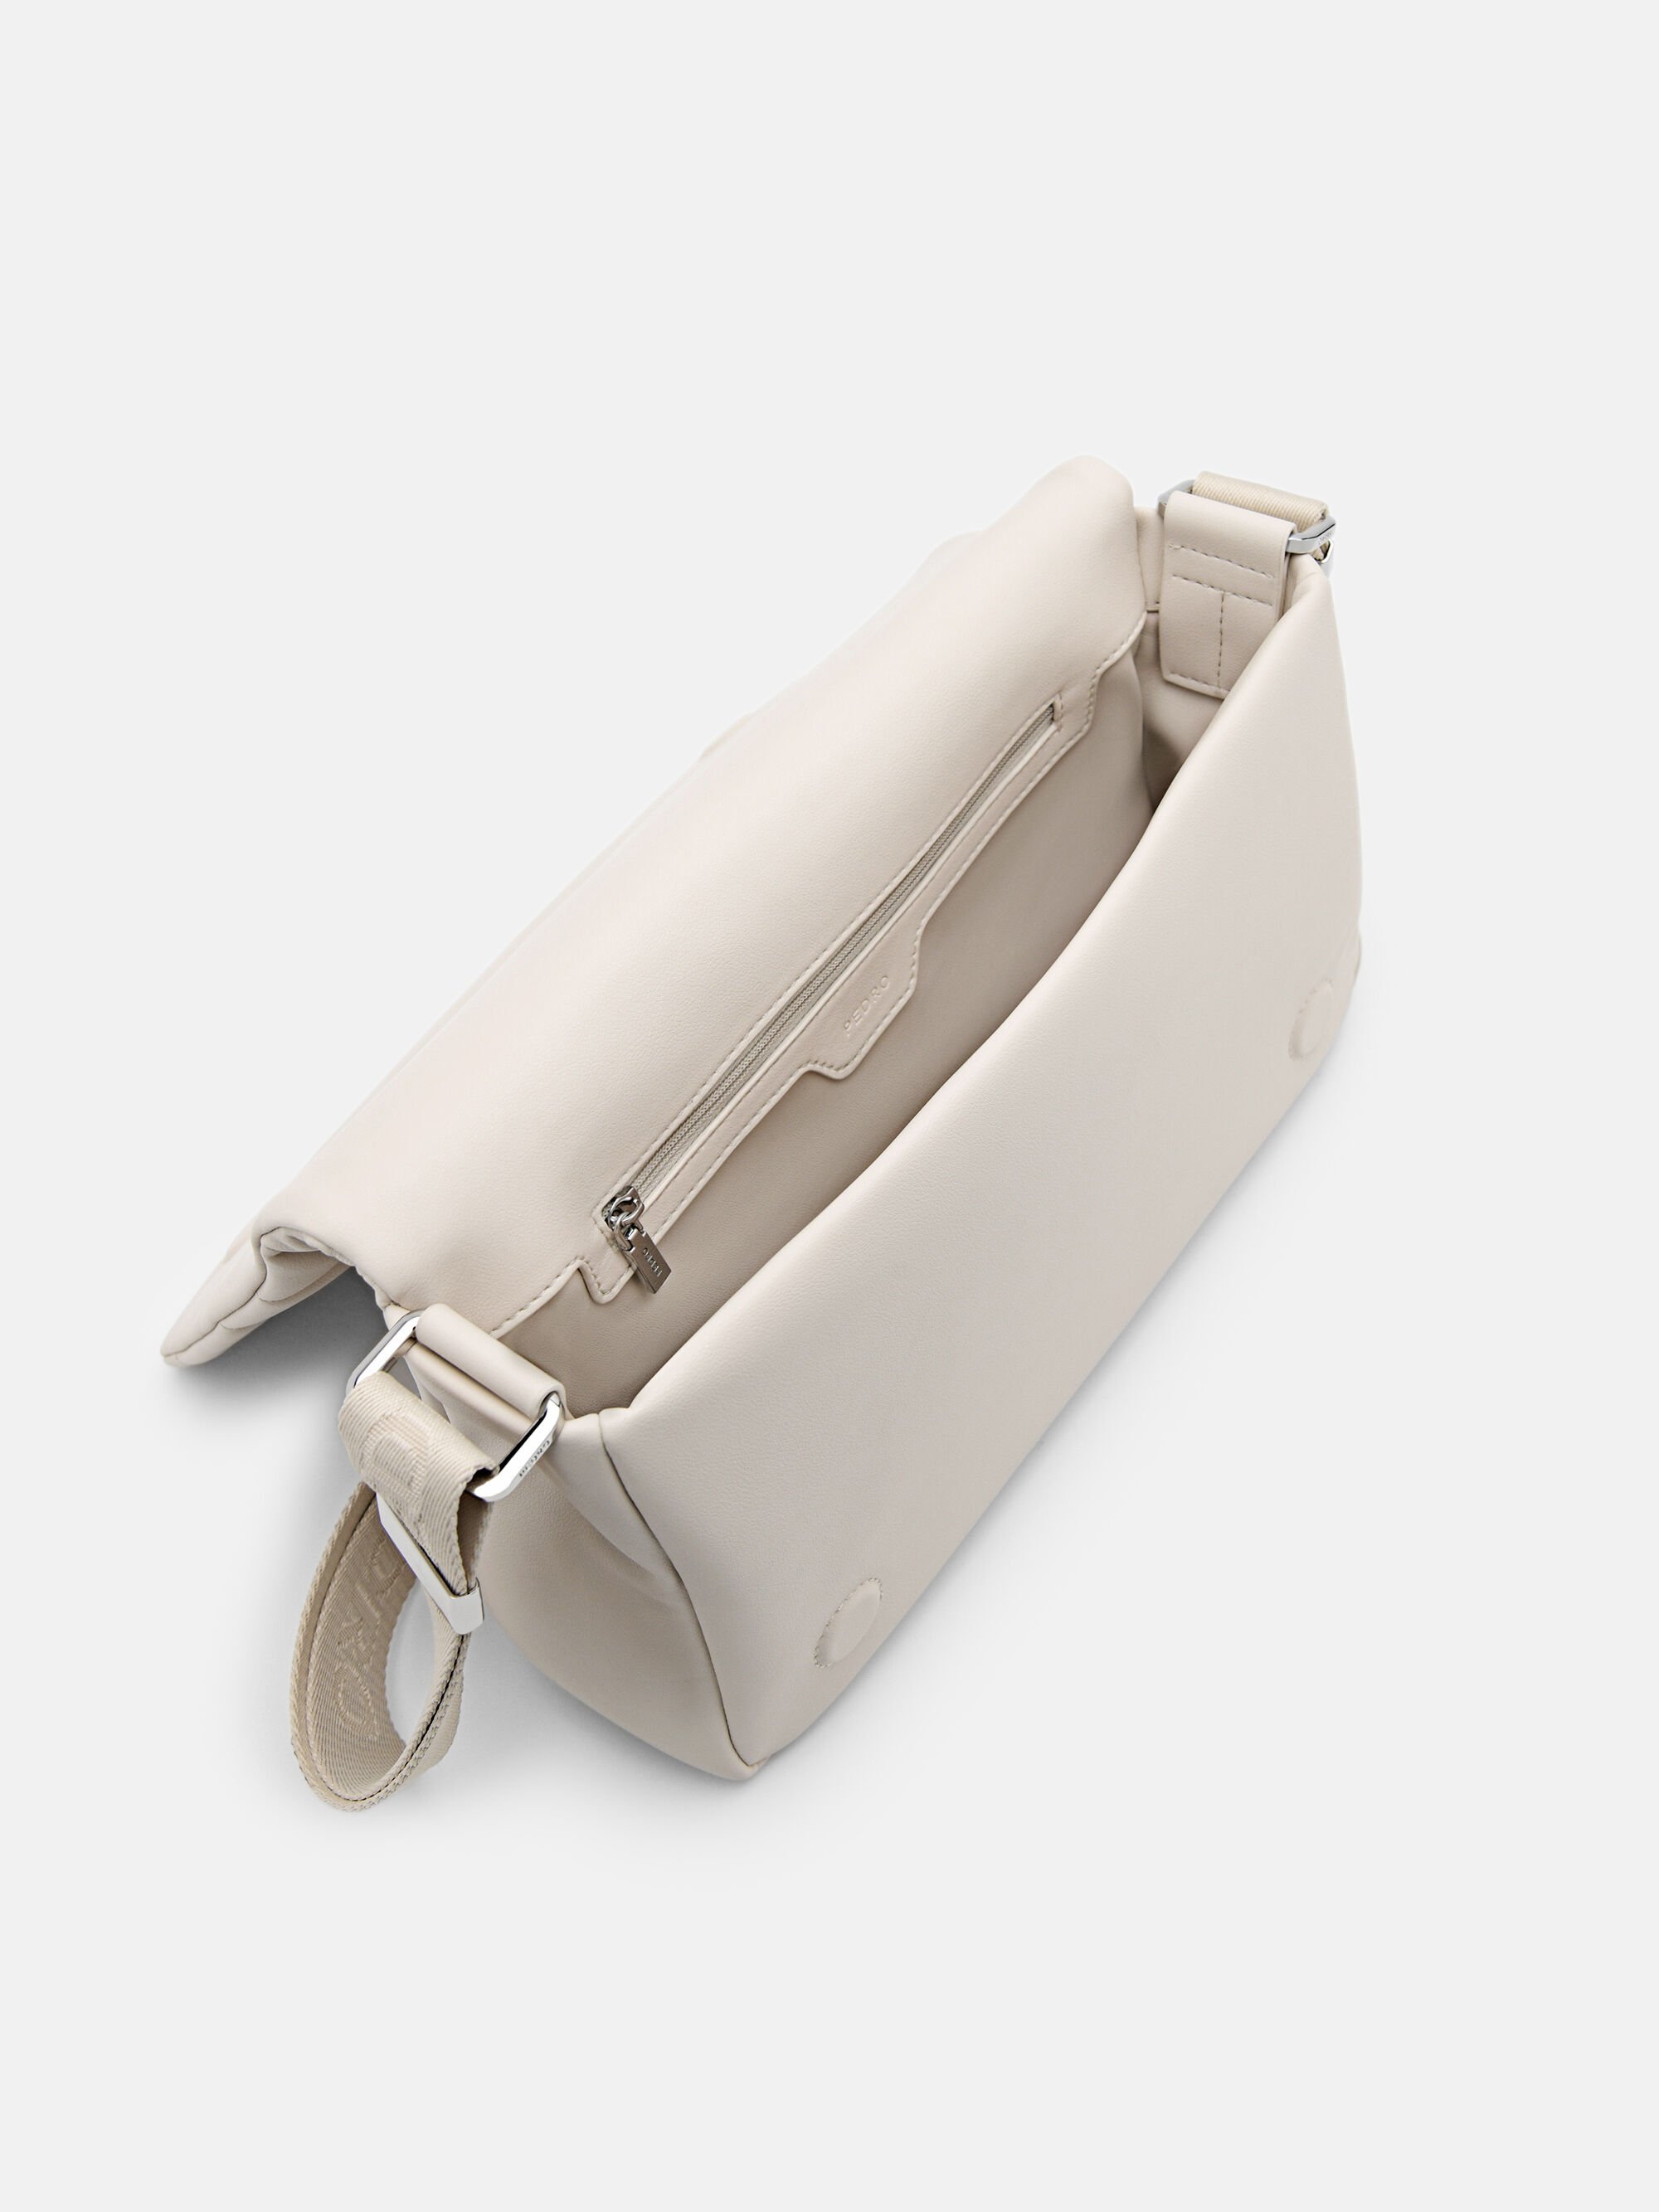 Trendy_Bee - New Arrival ‼️ PEDRO Canvas Camera Shoulder Bag